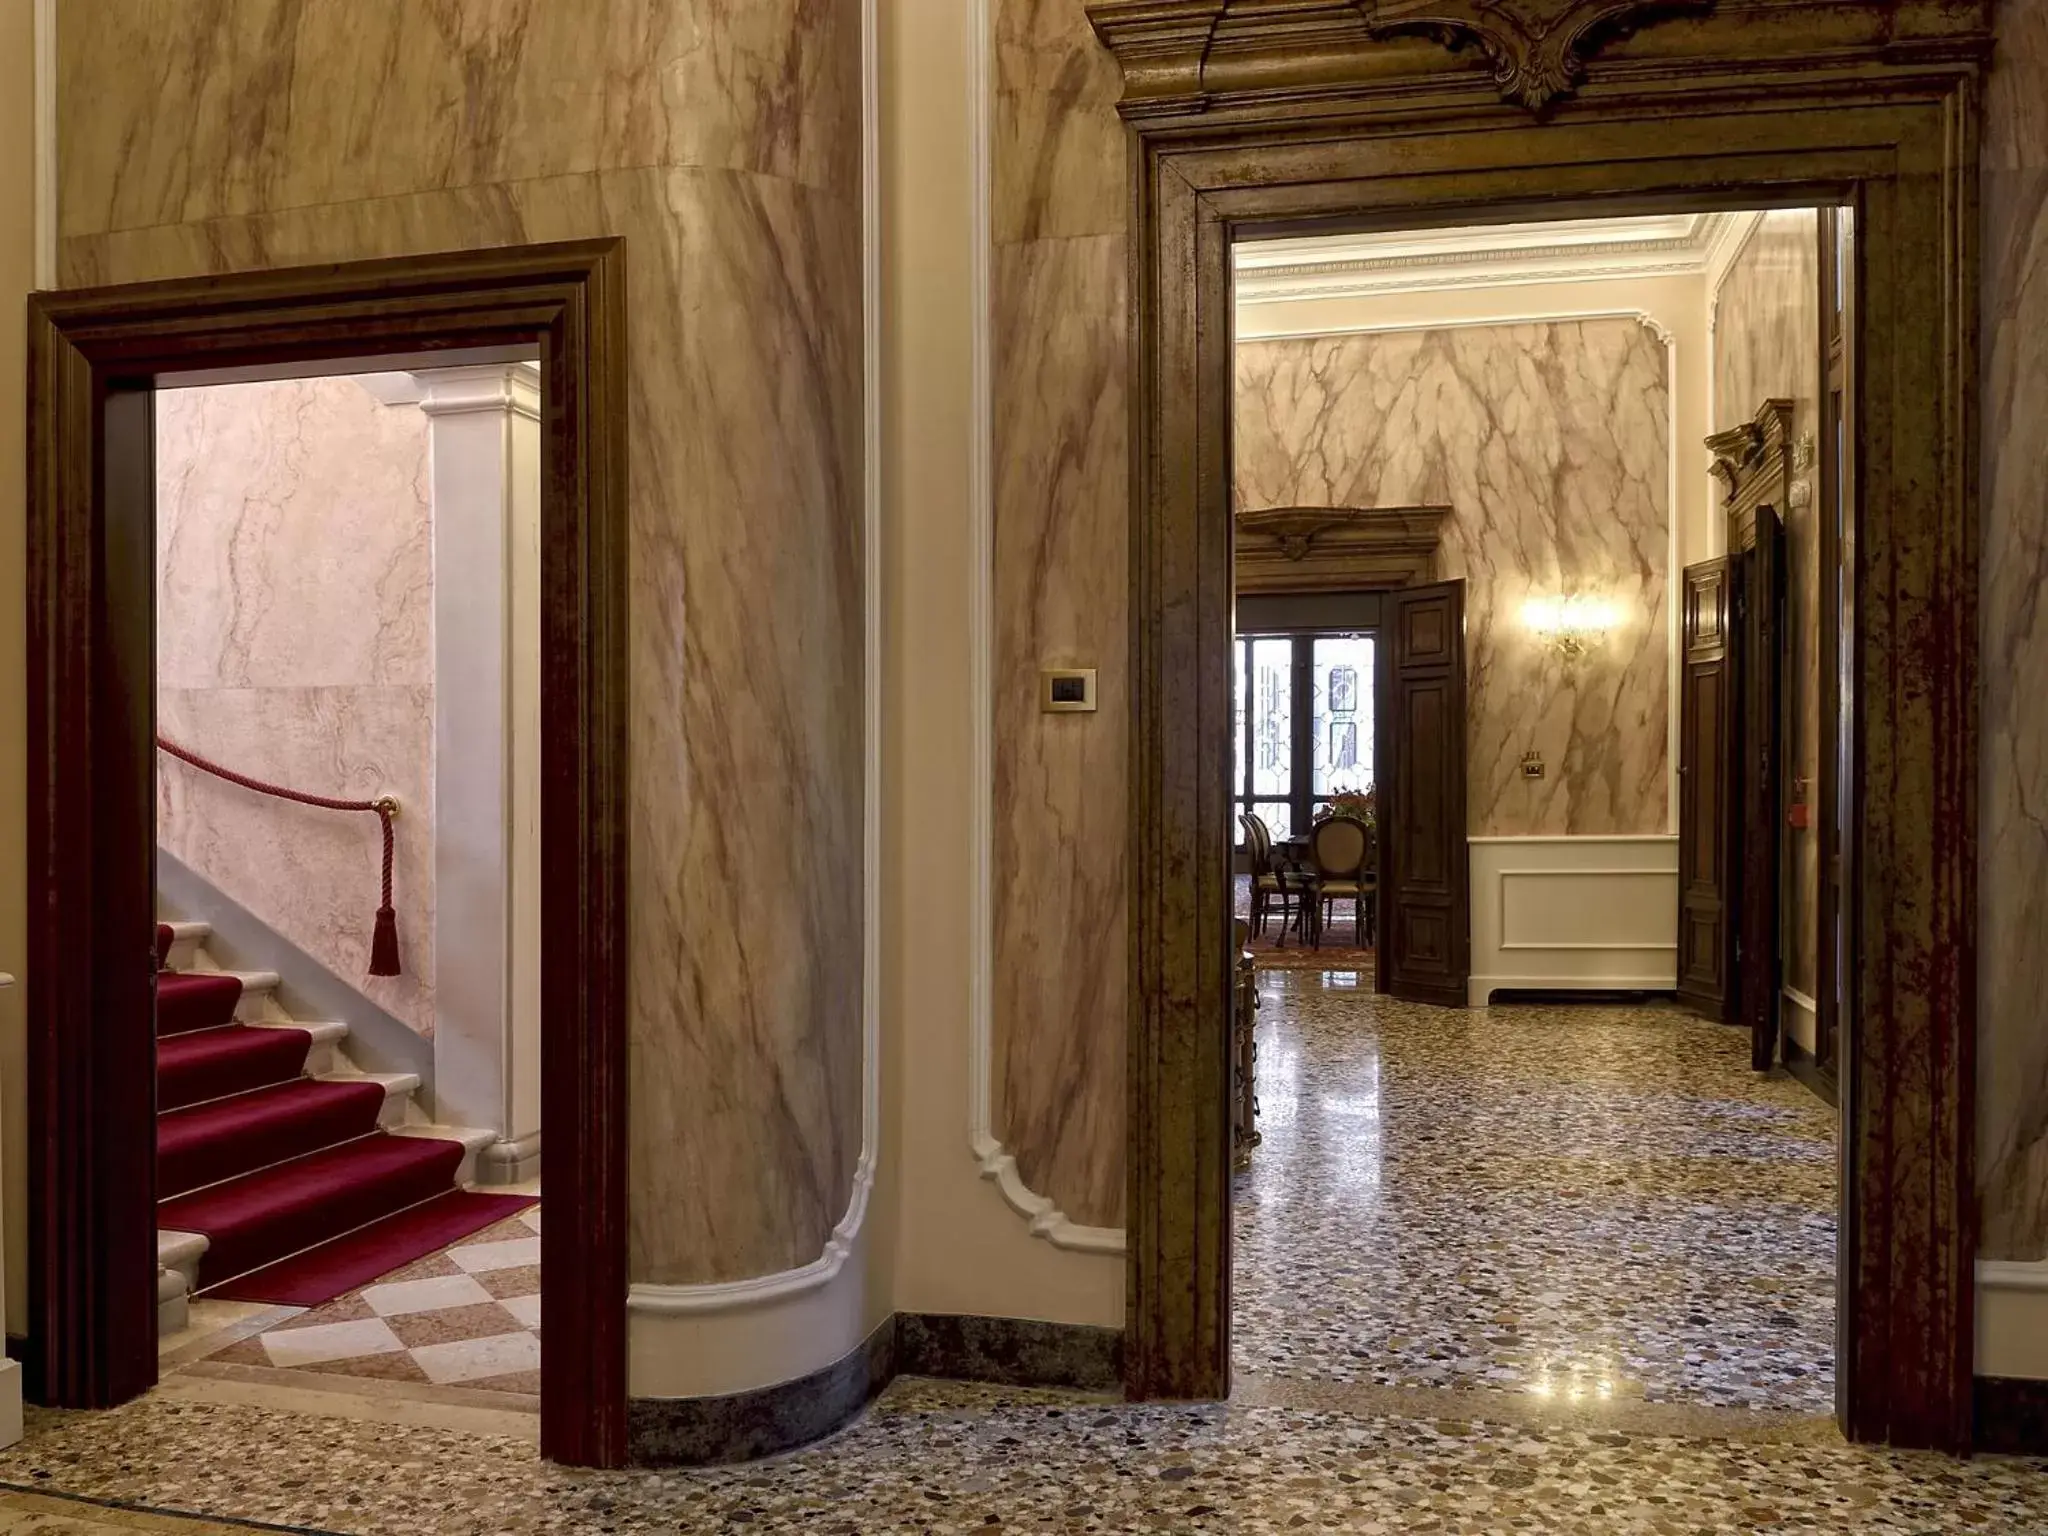 Decorative detail in Hotel Ai Cavalieri di Venezia